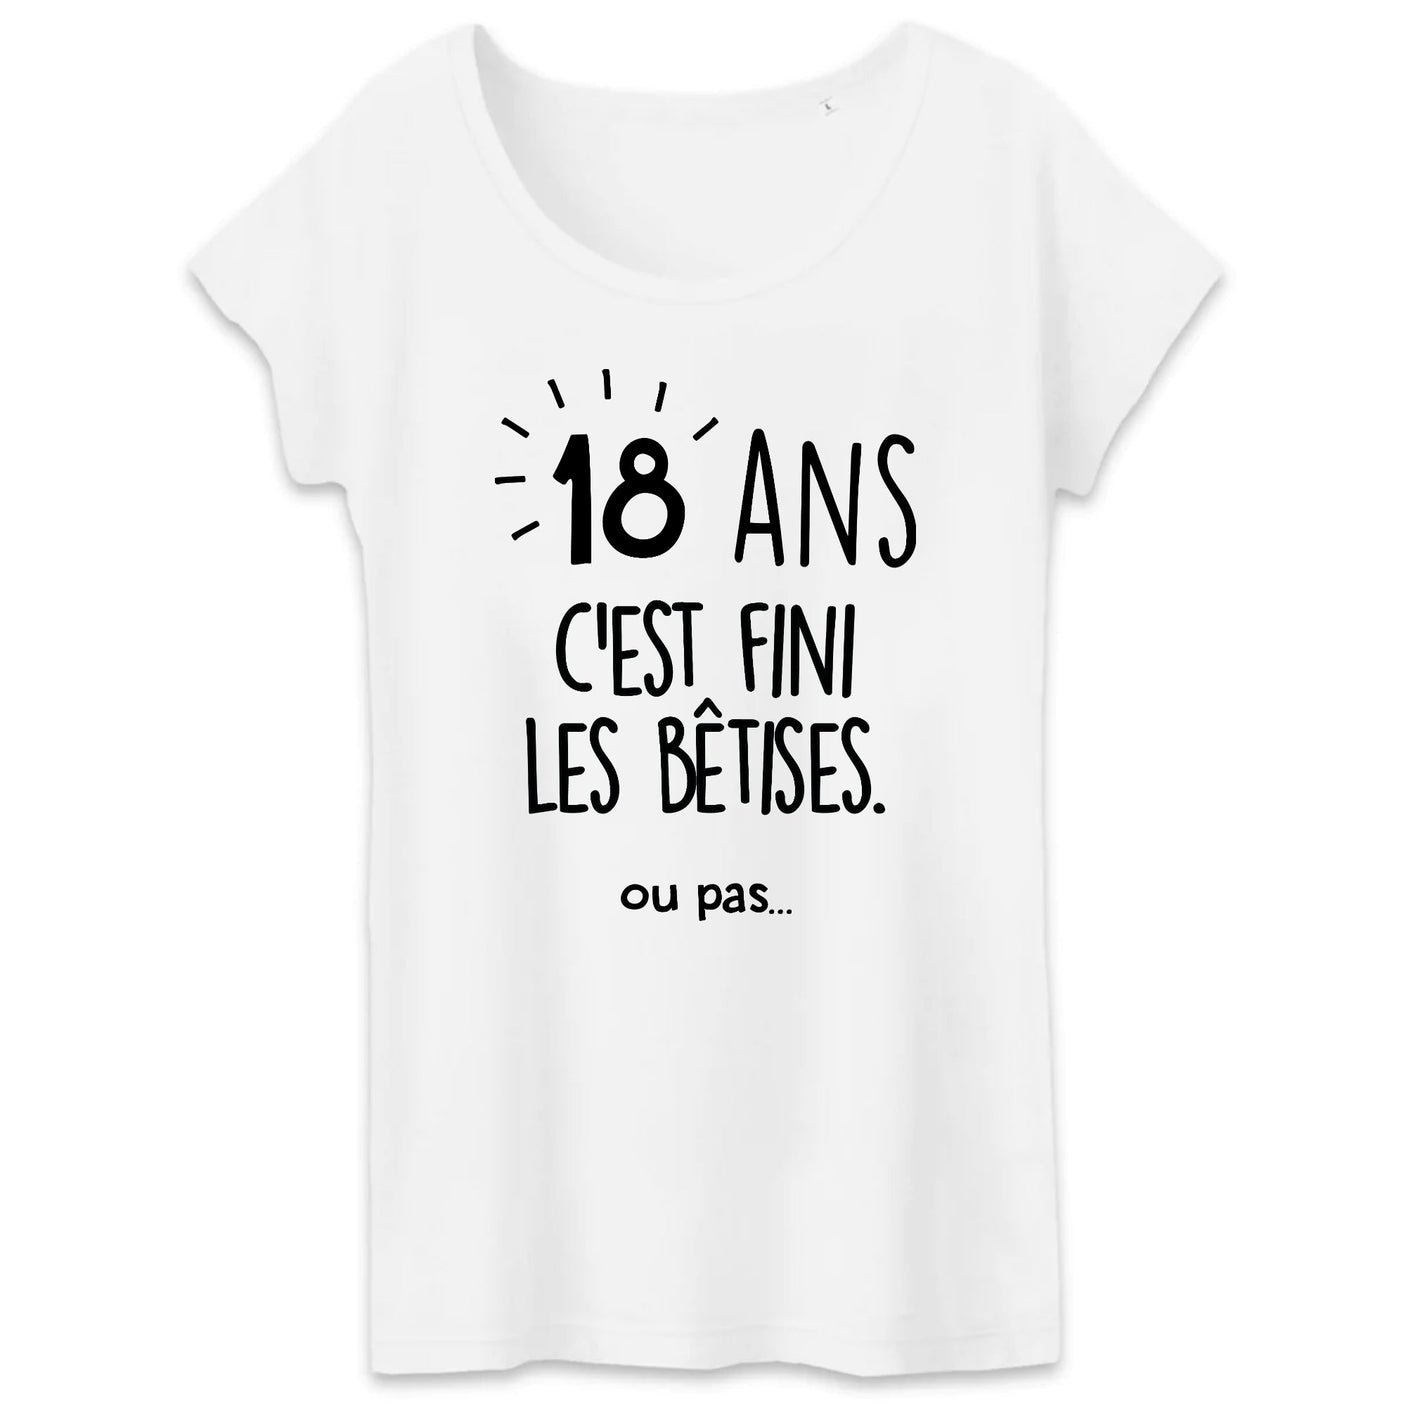 T-shirt anniversaire 18 ans femme - Ambiance-party